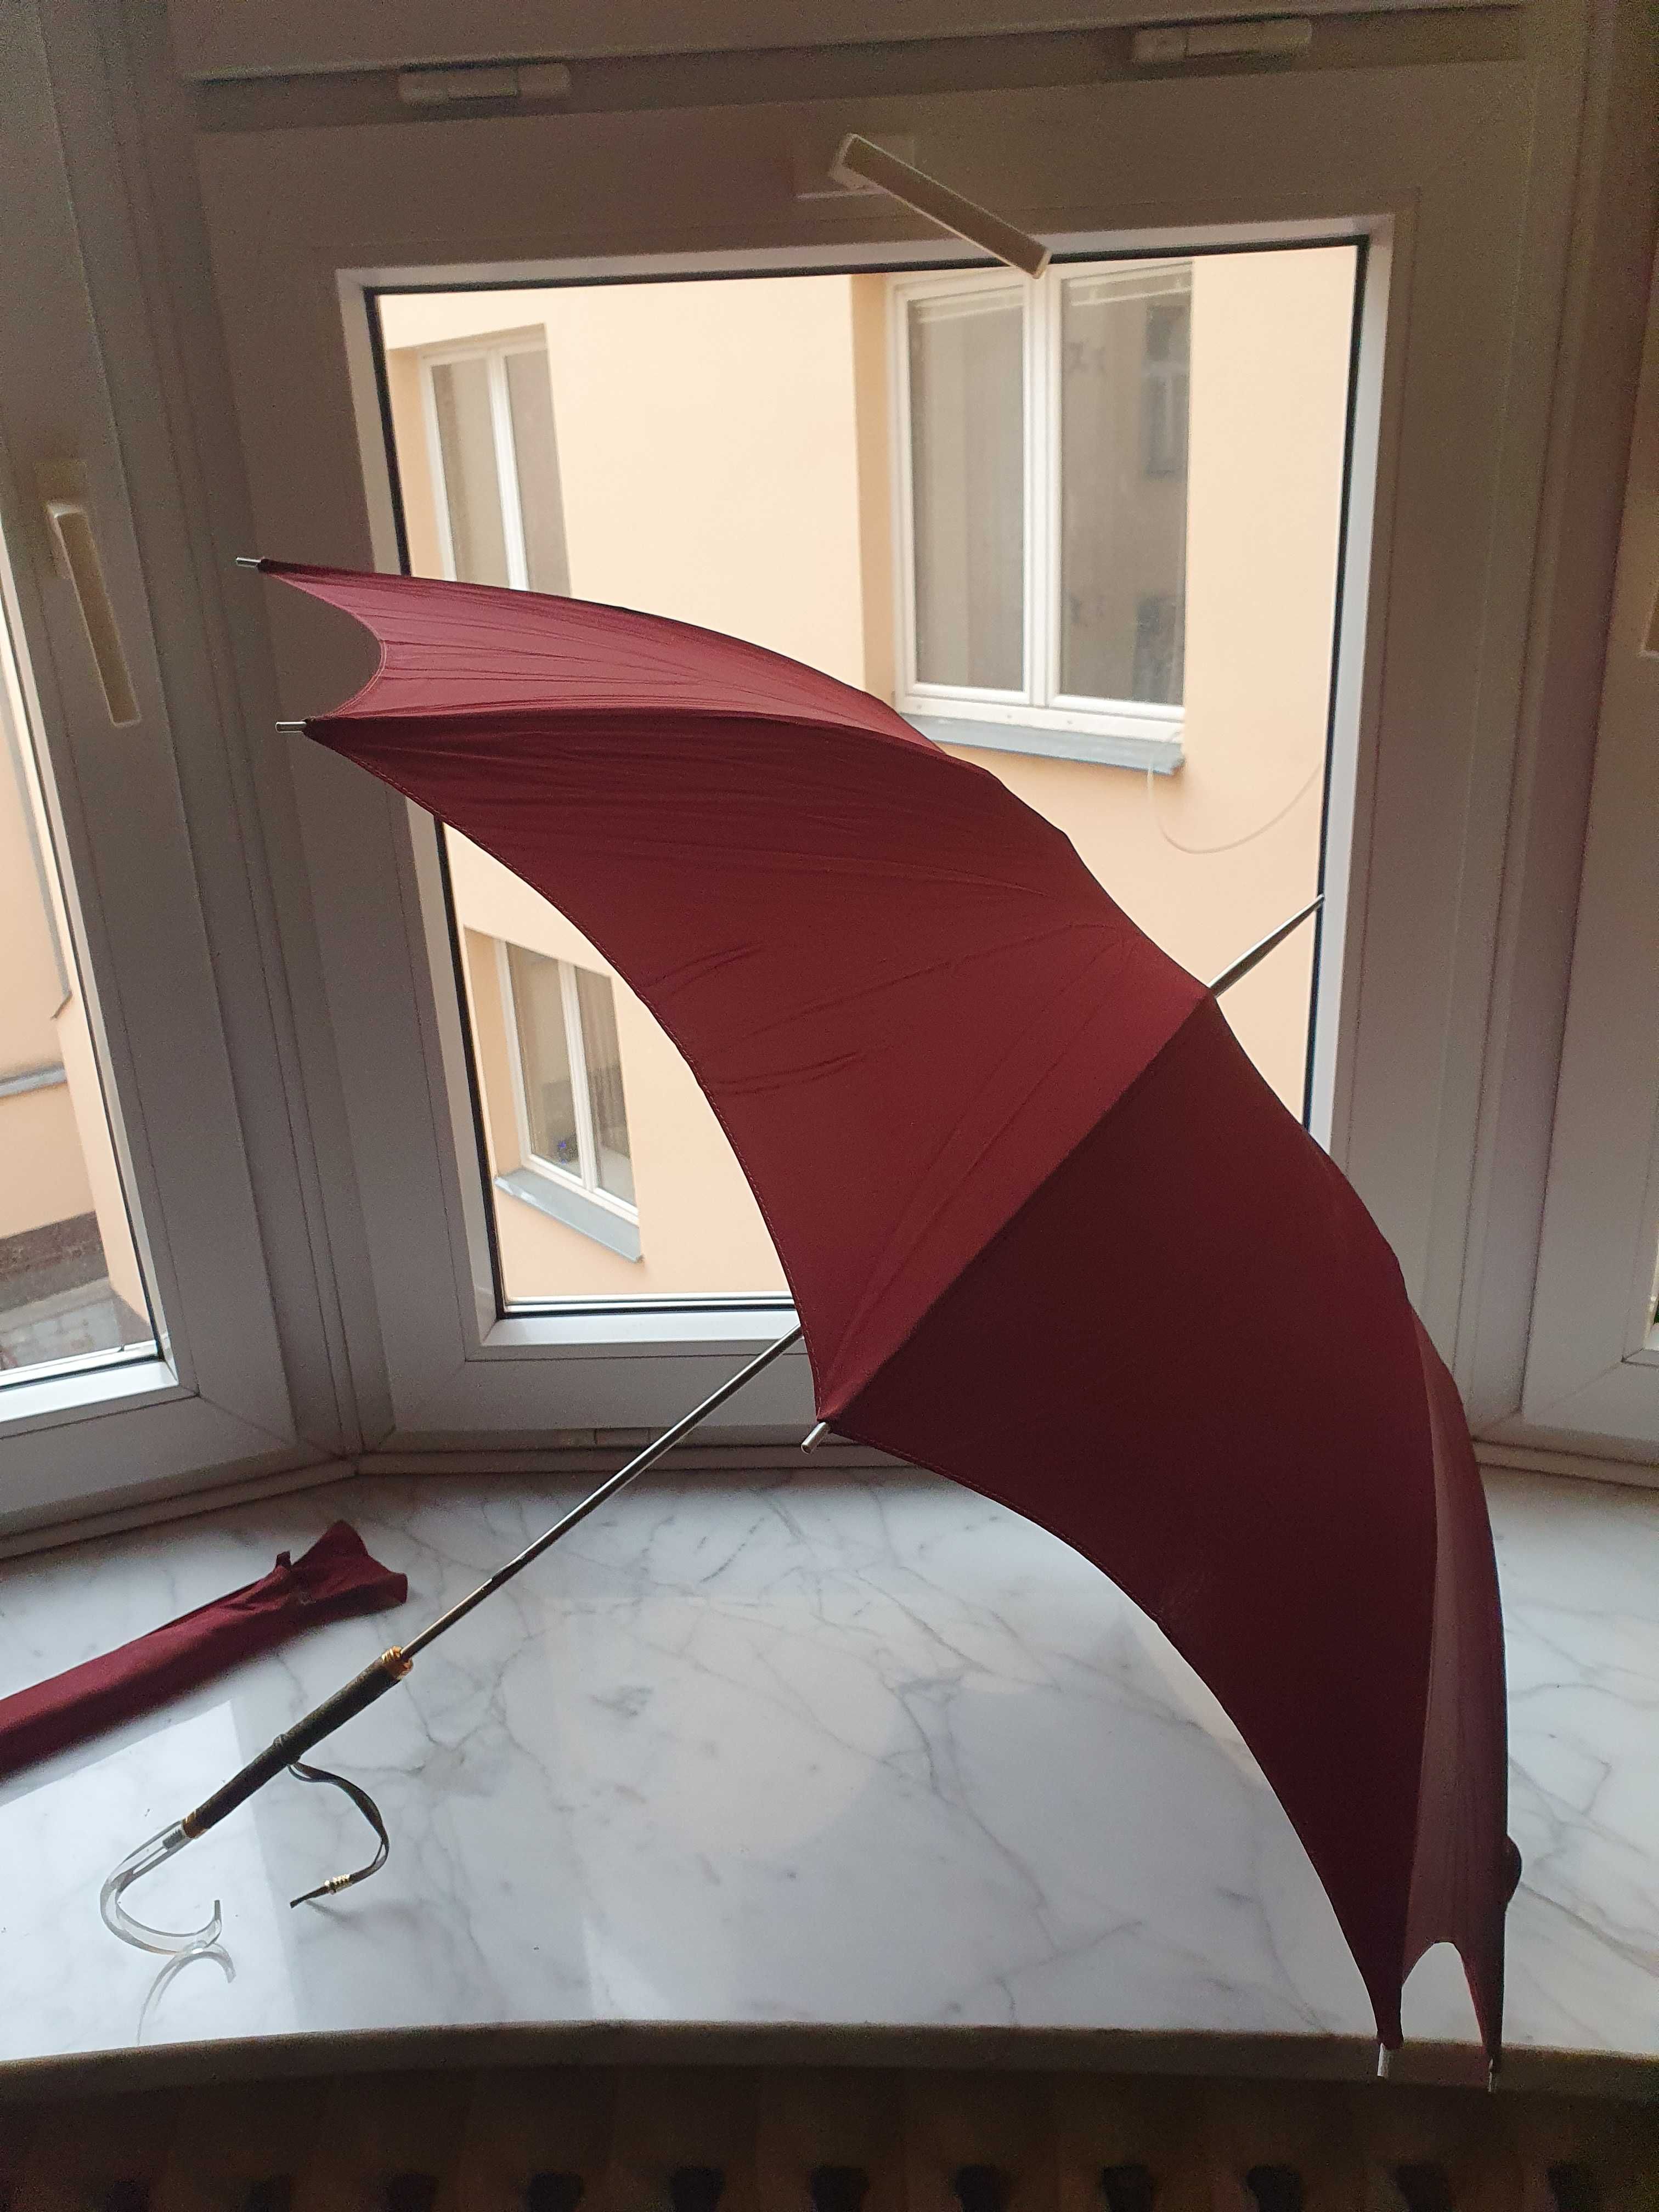 Doskonała do kolekcji lub na plan filmowy/zdjęciowy - stara parasolka.